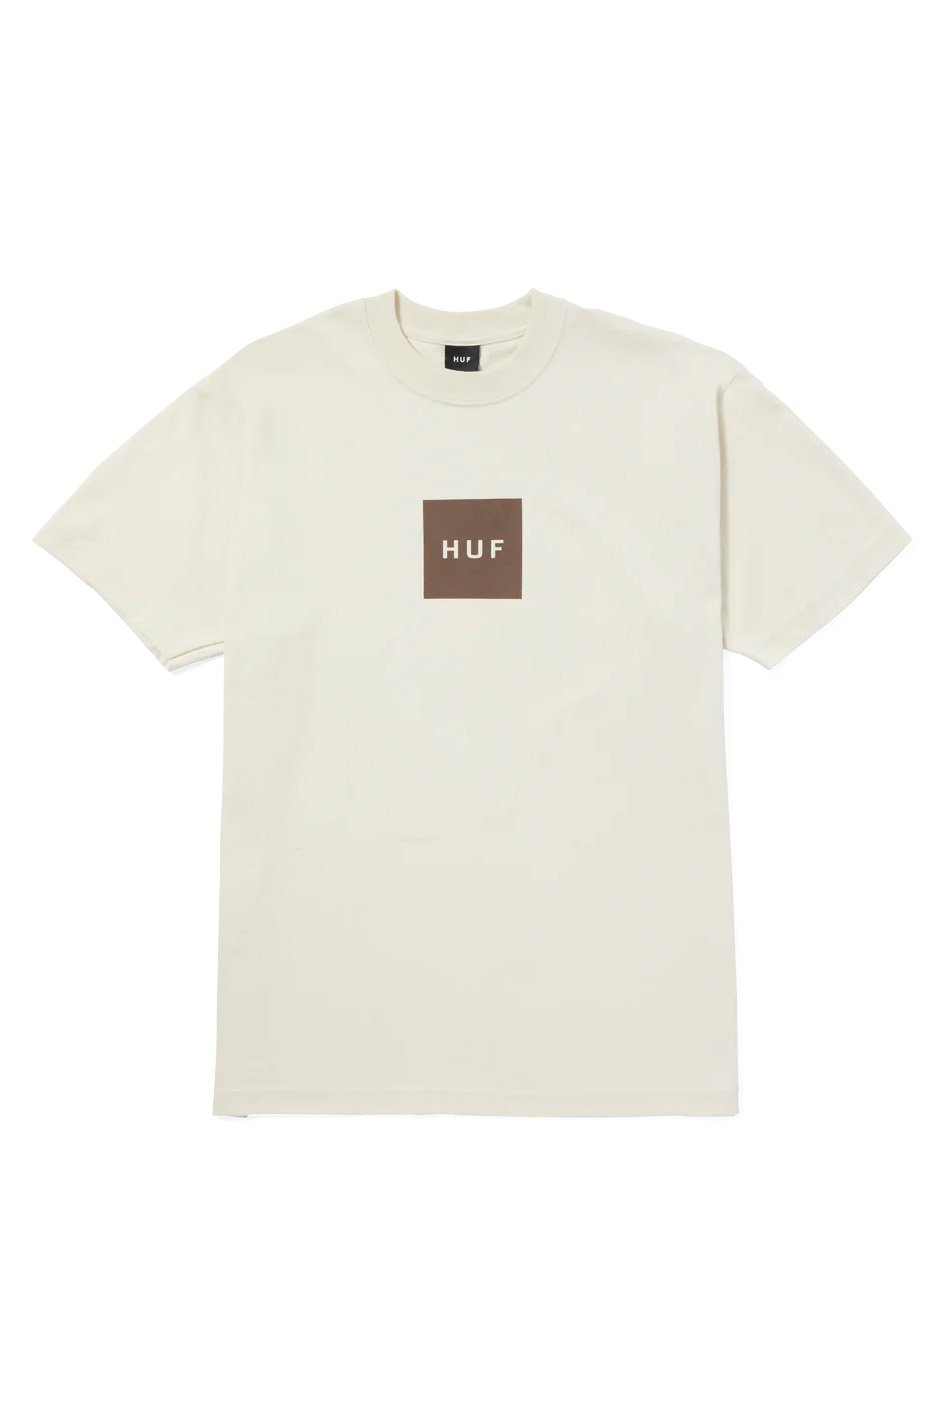 Camiseta Huf Set Box Bone